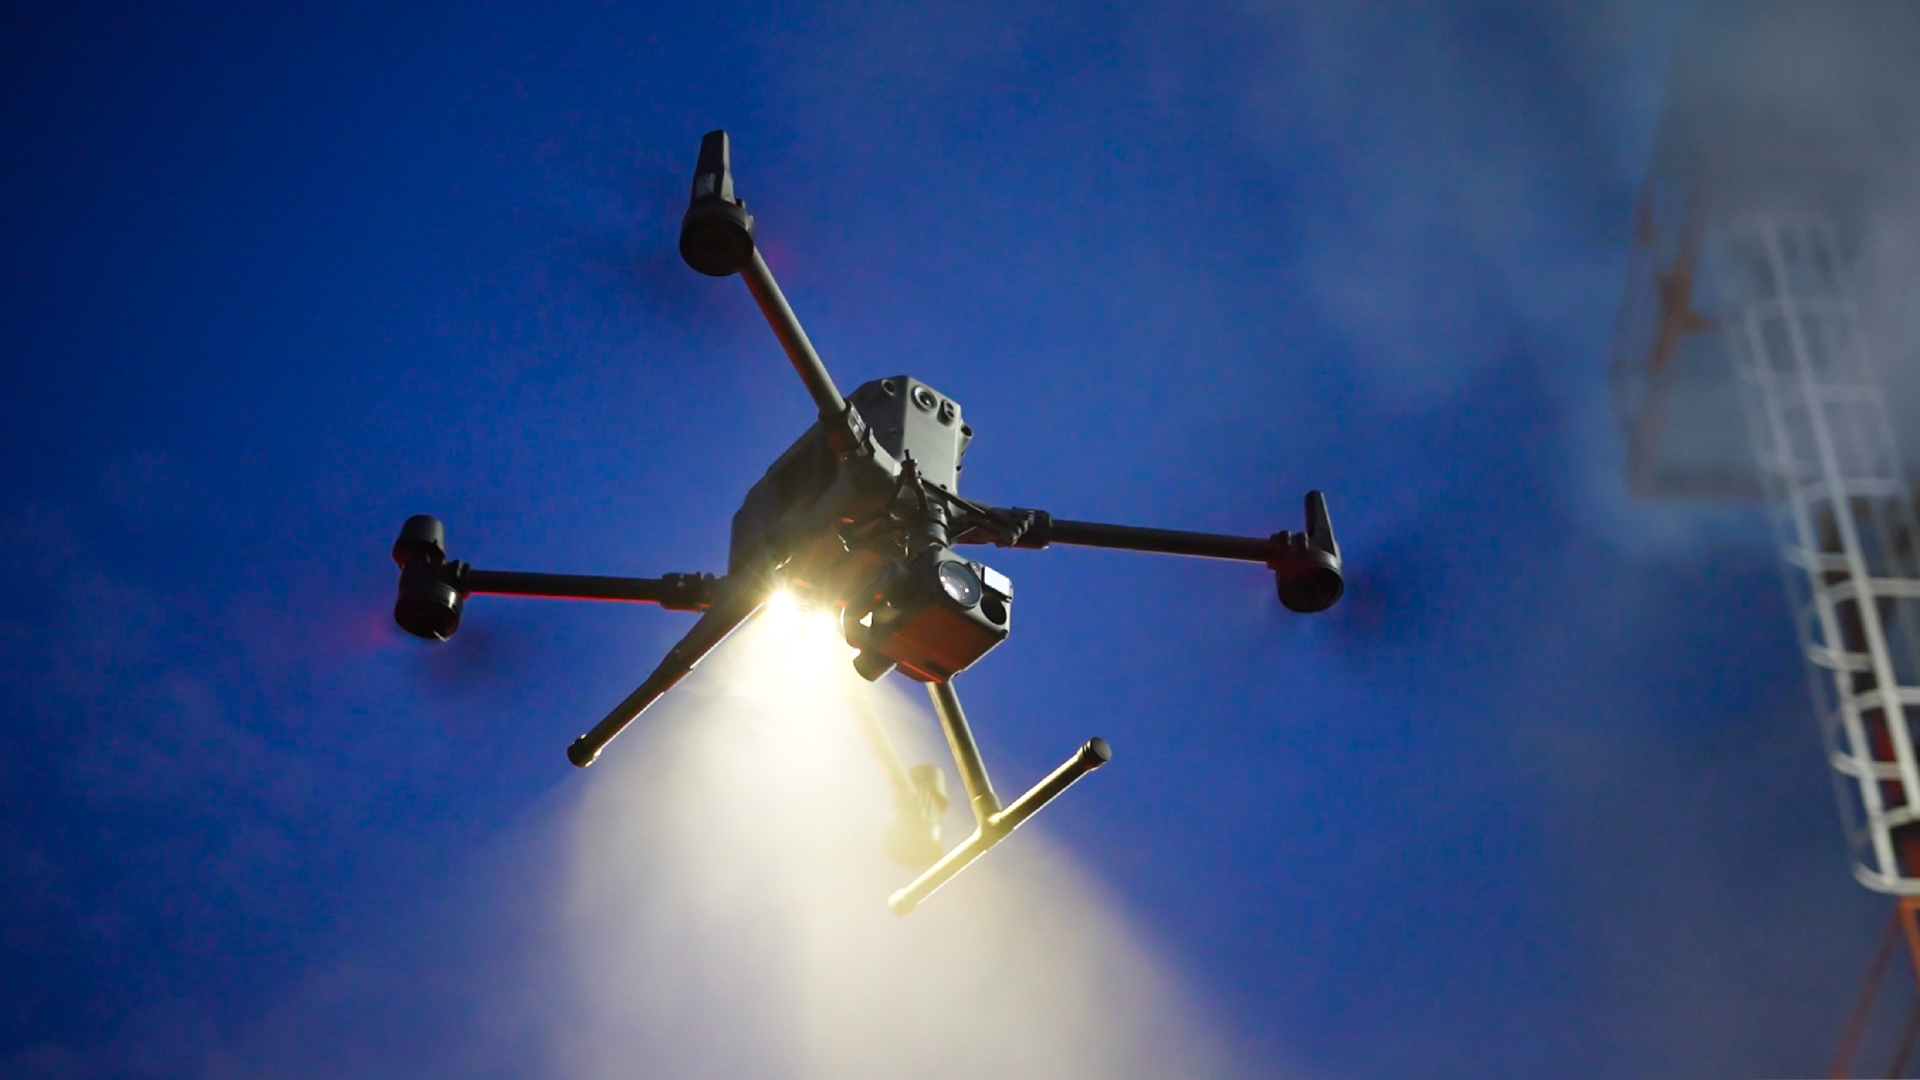 Seguridad, gestión del tráfico y paquetería: El potencial de los drones para los entornos urbanos